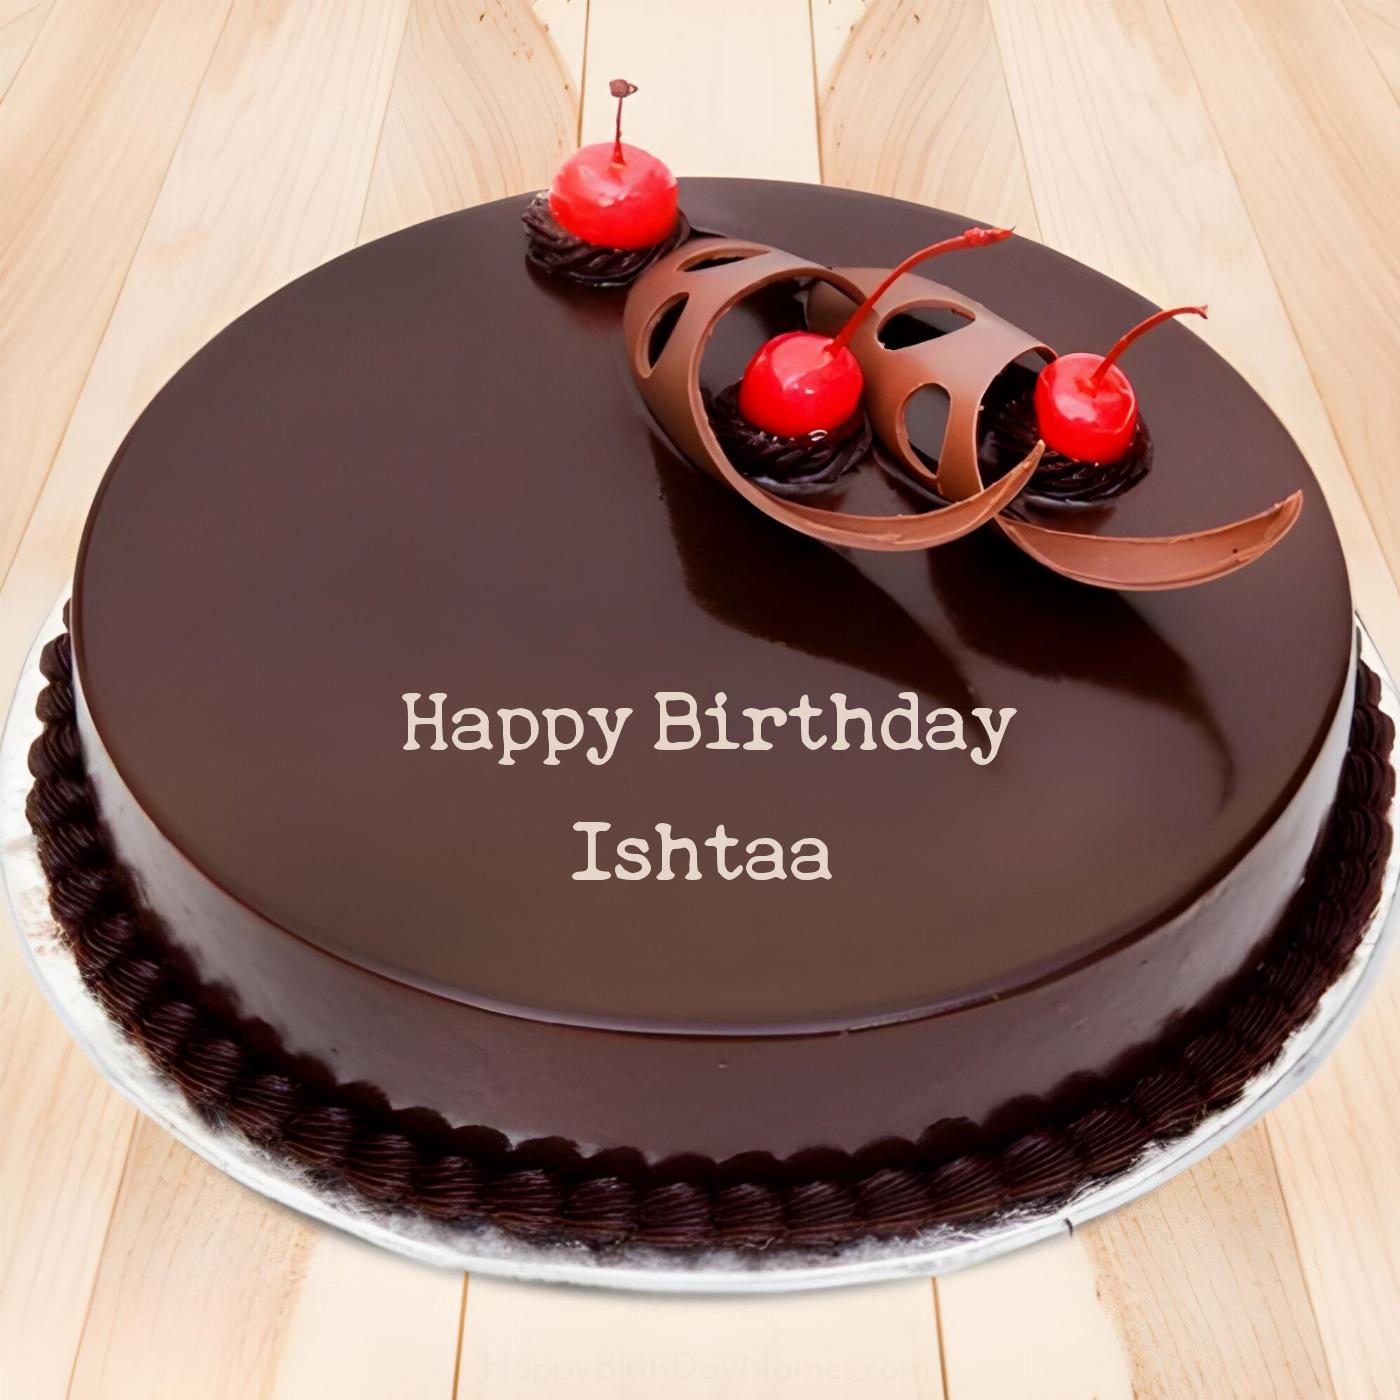 Happy Birthday Ishtaa Chocolate Cherry Cake